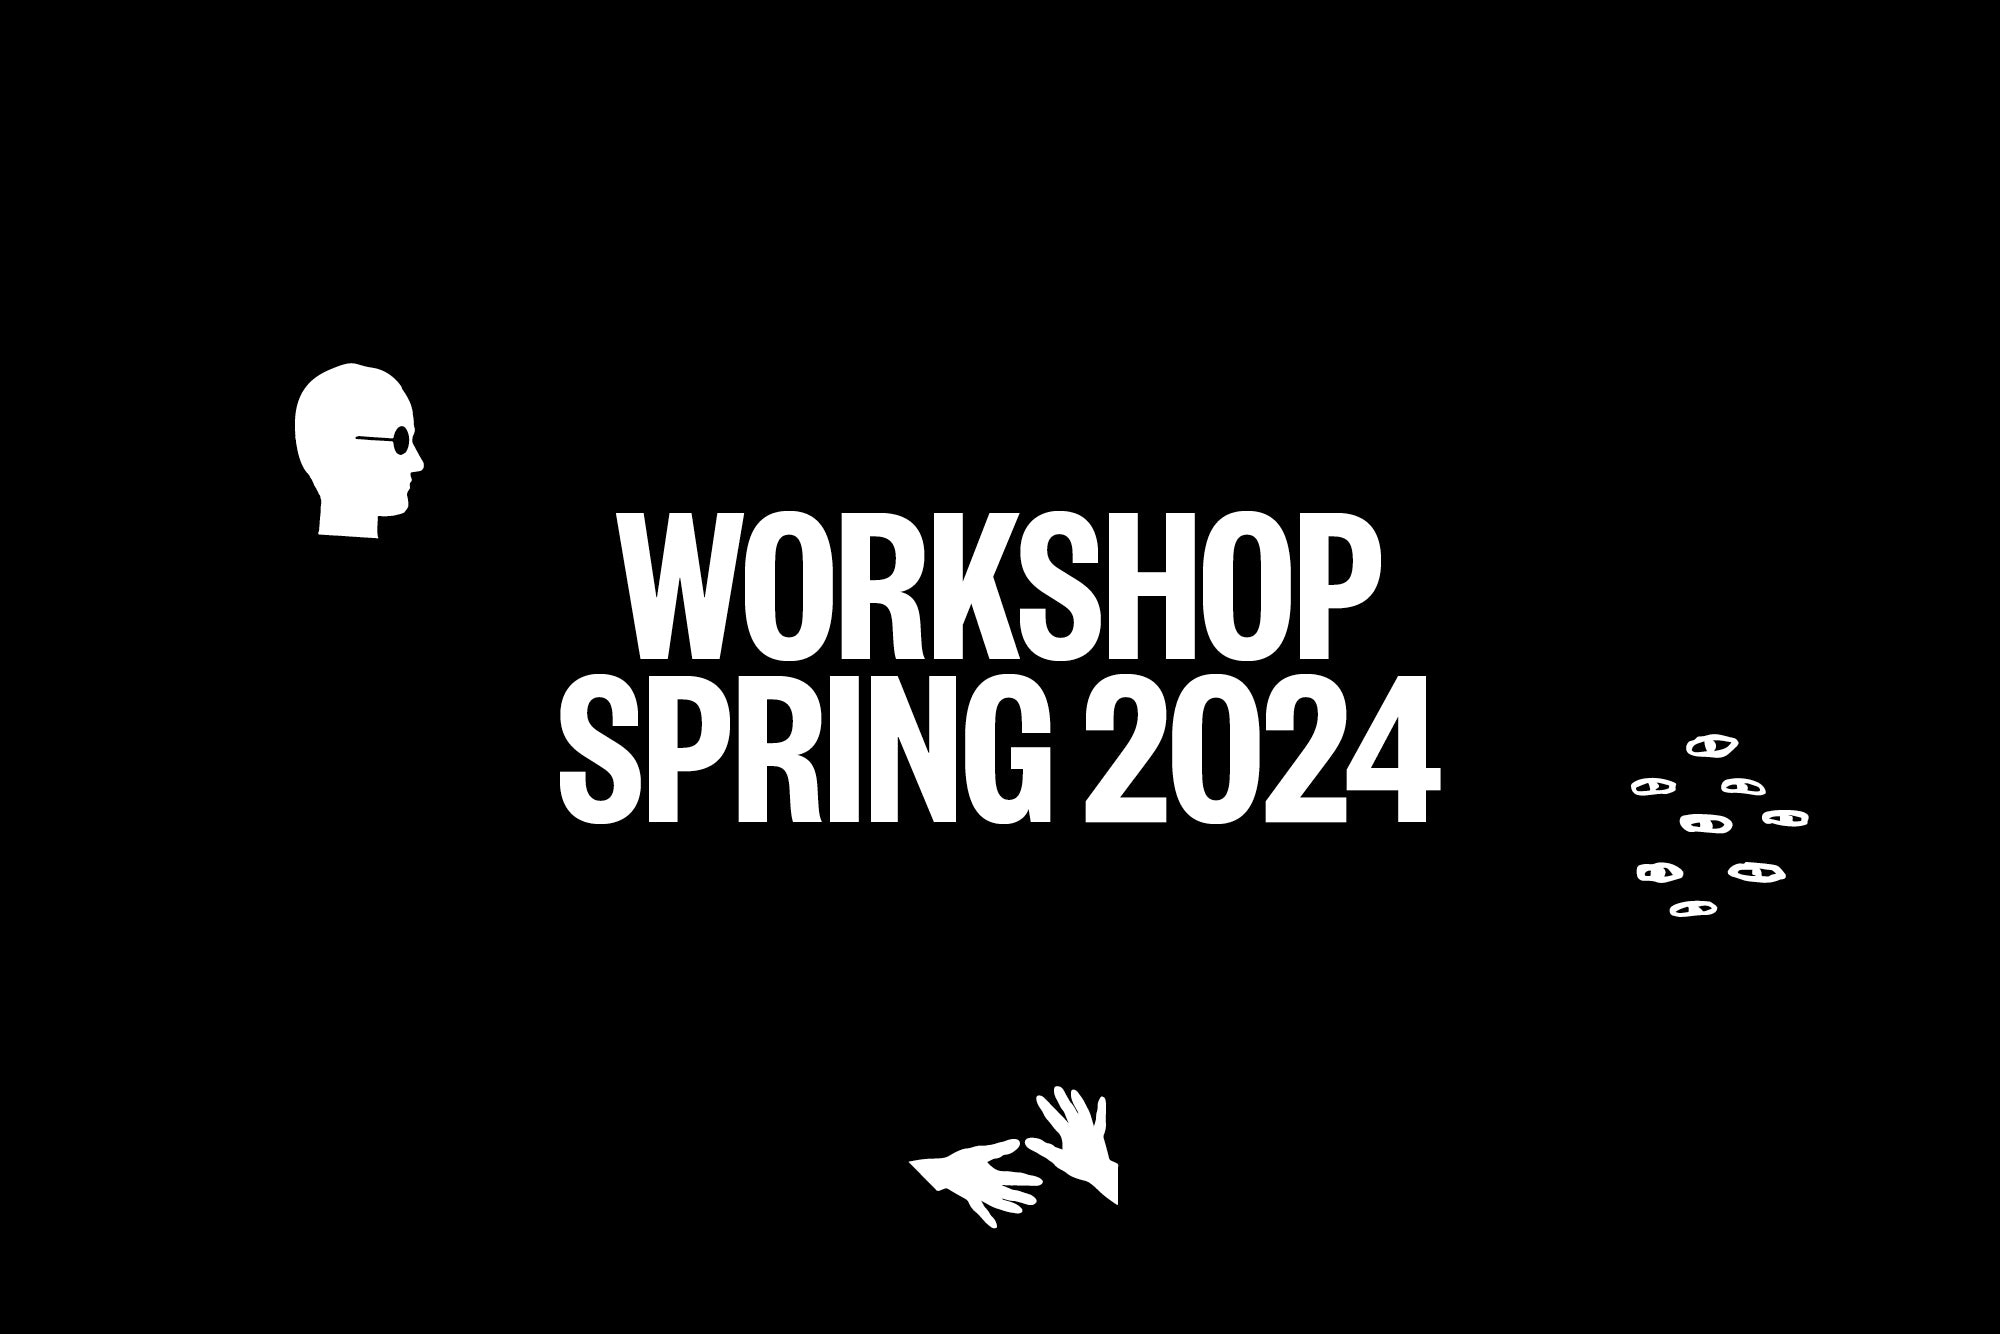 On Art Direction Workshop, Spring 2024